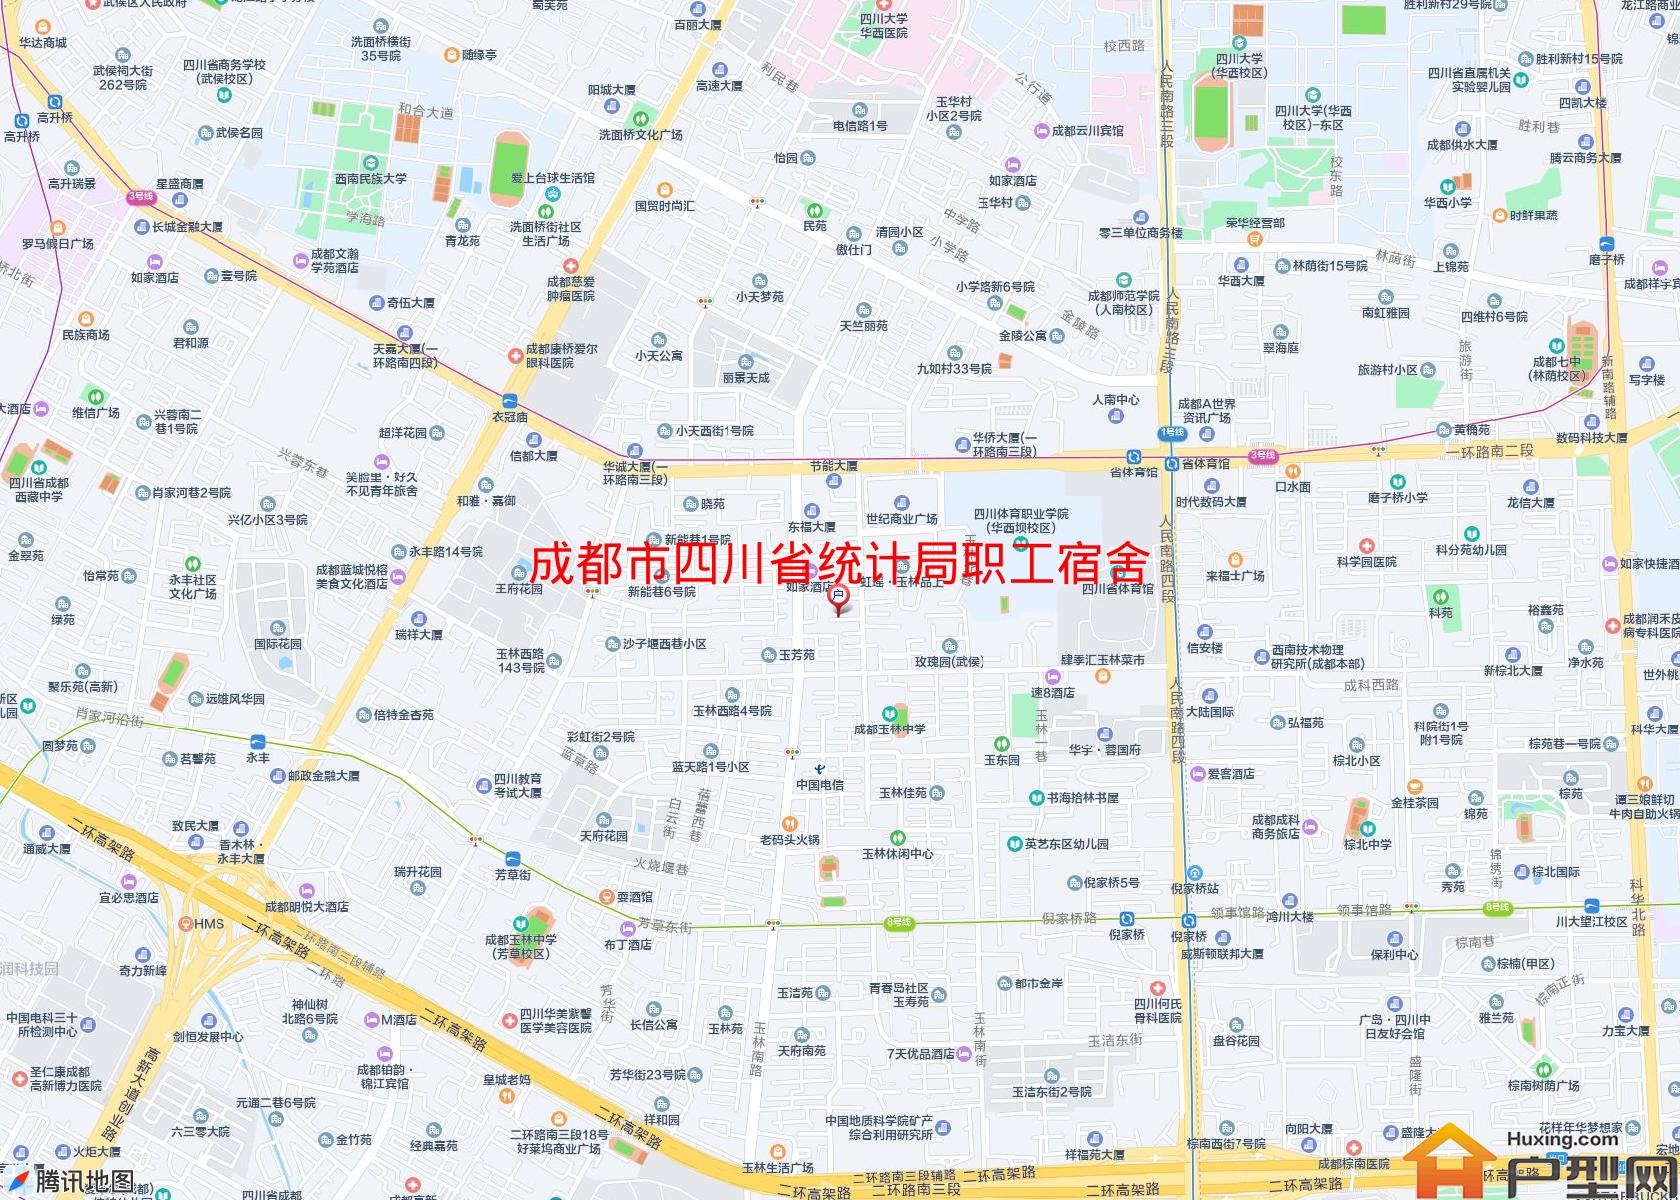 四川省统计局职工宿舍小区 - 户型网